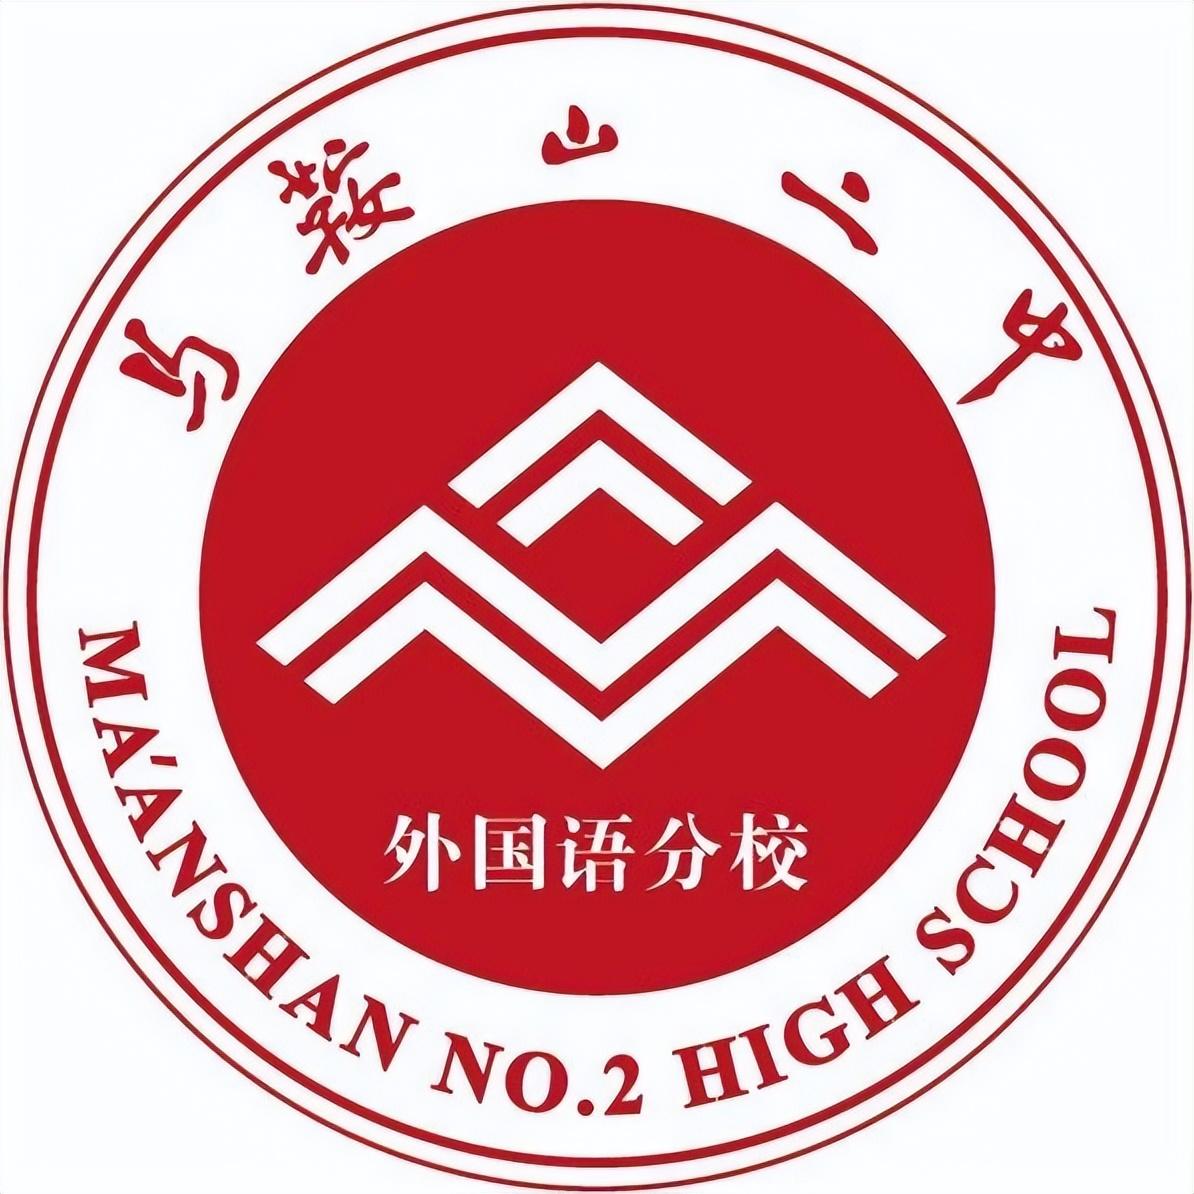 今年高考松江二中6名学子入选强基计划 屡获佳绩的背后是拼尽全力的付出